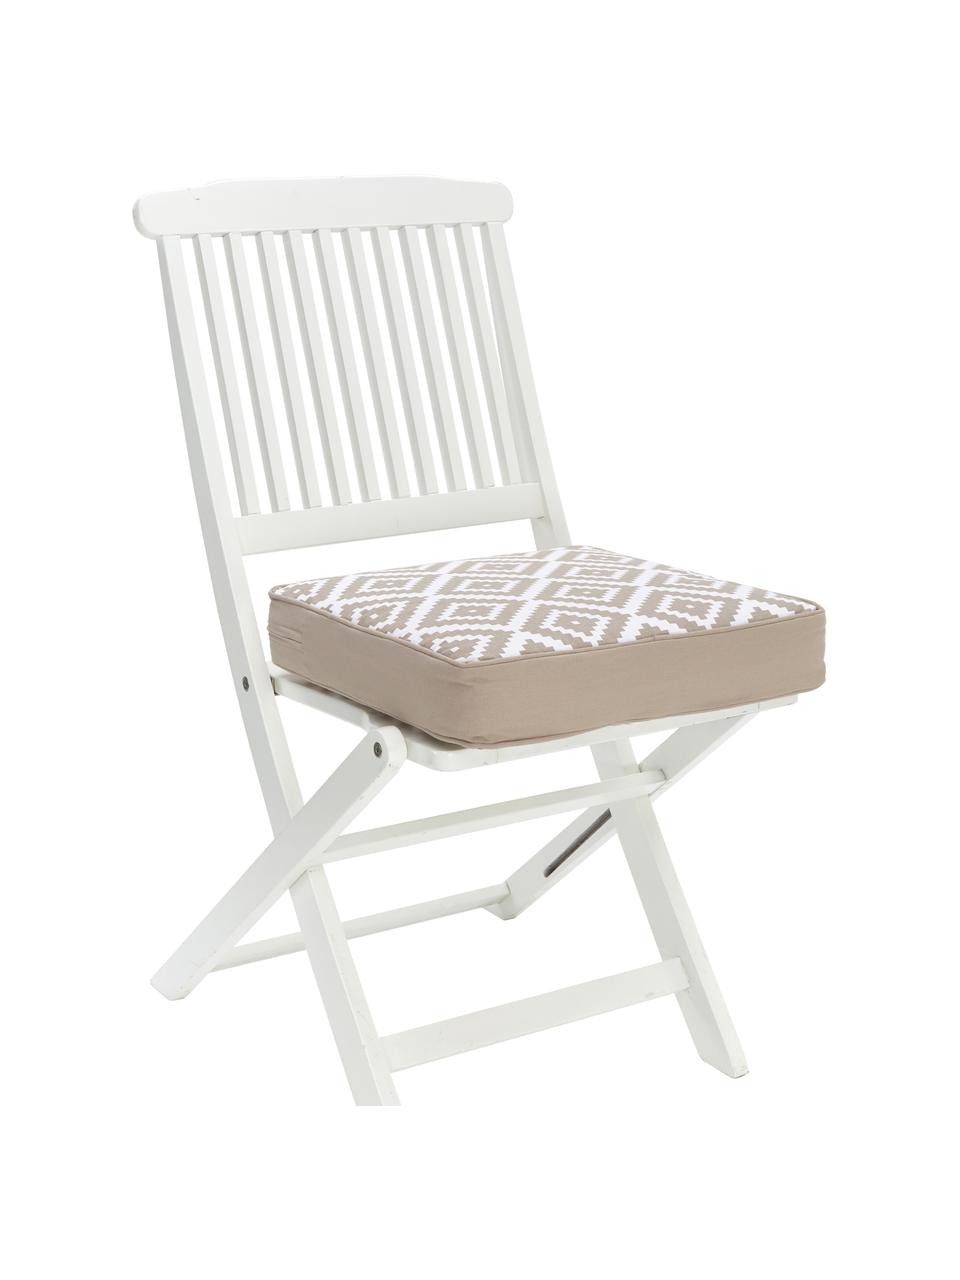 Hohes Sitzkissen Miami in Taupe/Weiß, Bezug: 100% Baumwolle, Beige, B 40 x L 40 cm